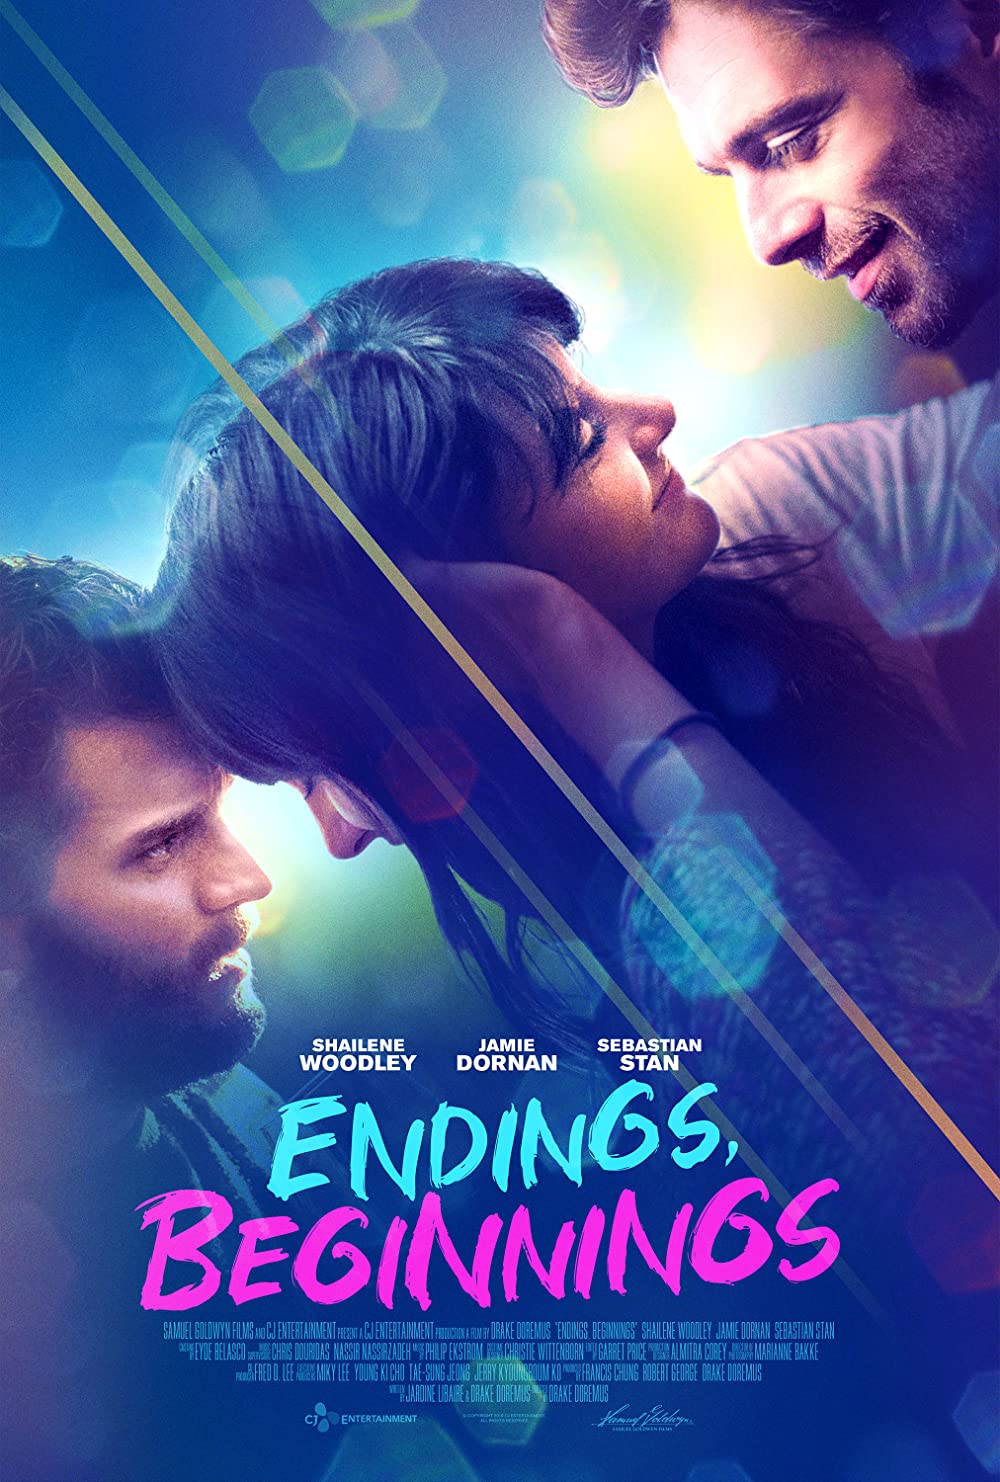 Filmbeschreibung zu Endings, Beginnings